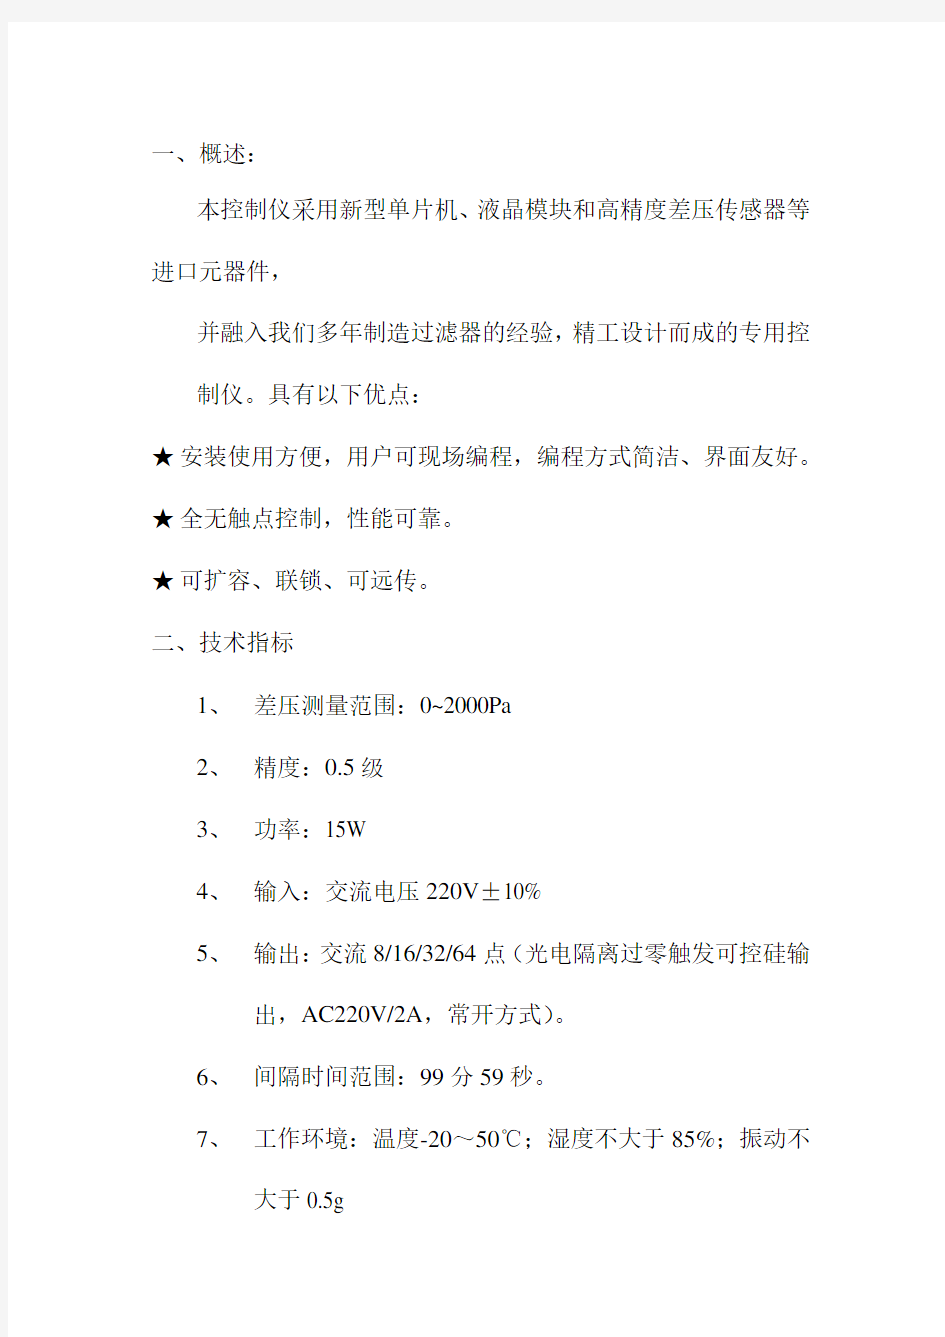 无锡安活自洁式空气过滤器控制仪使用说明书(中文版本)